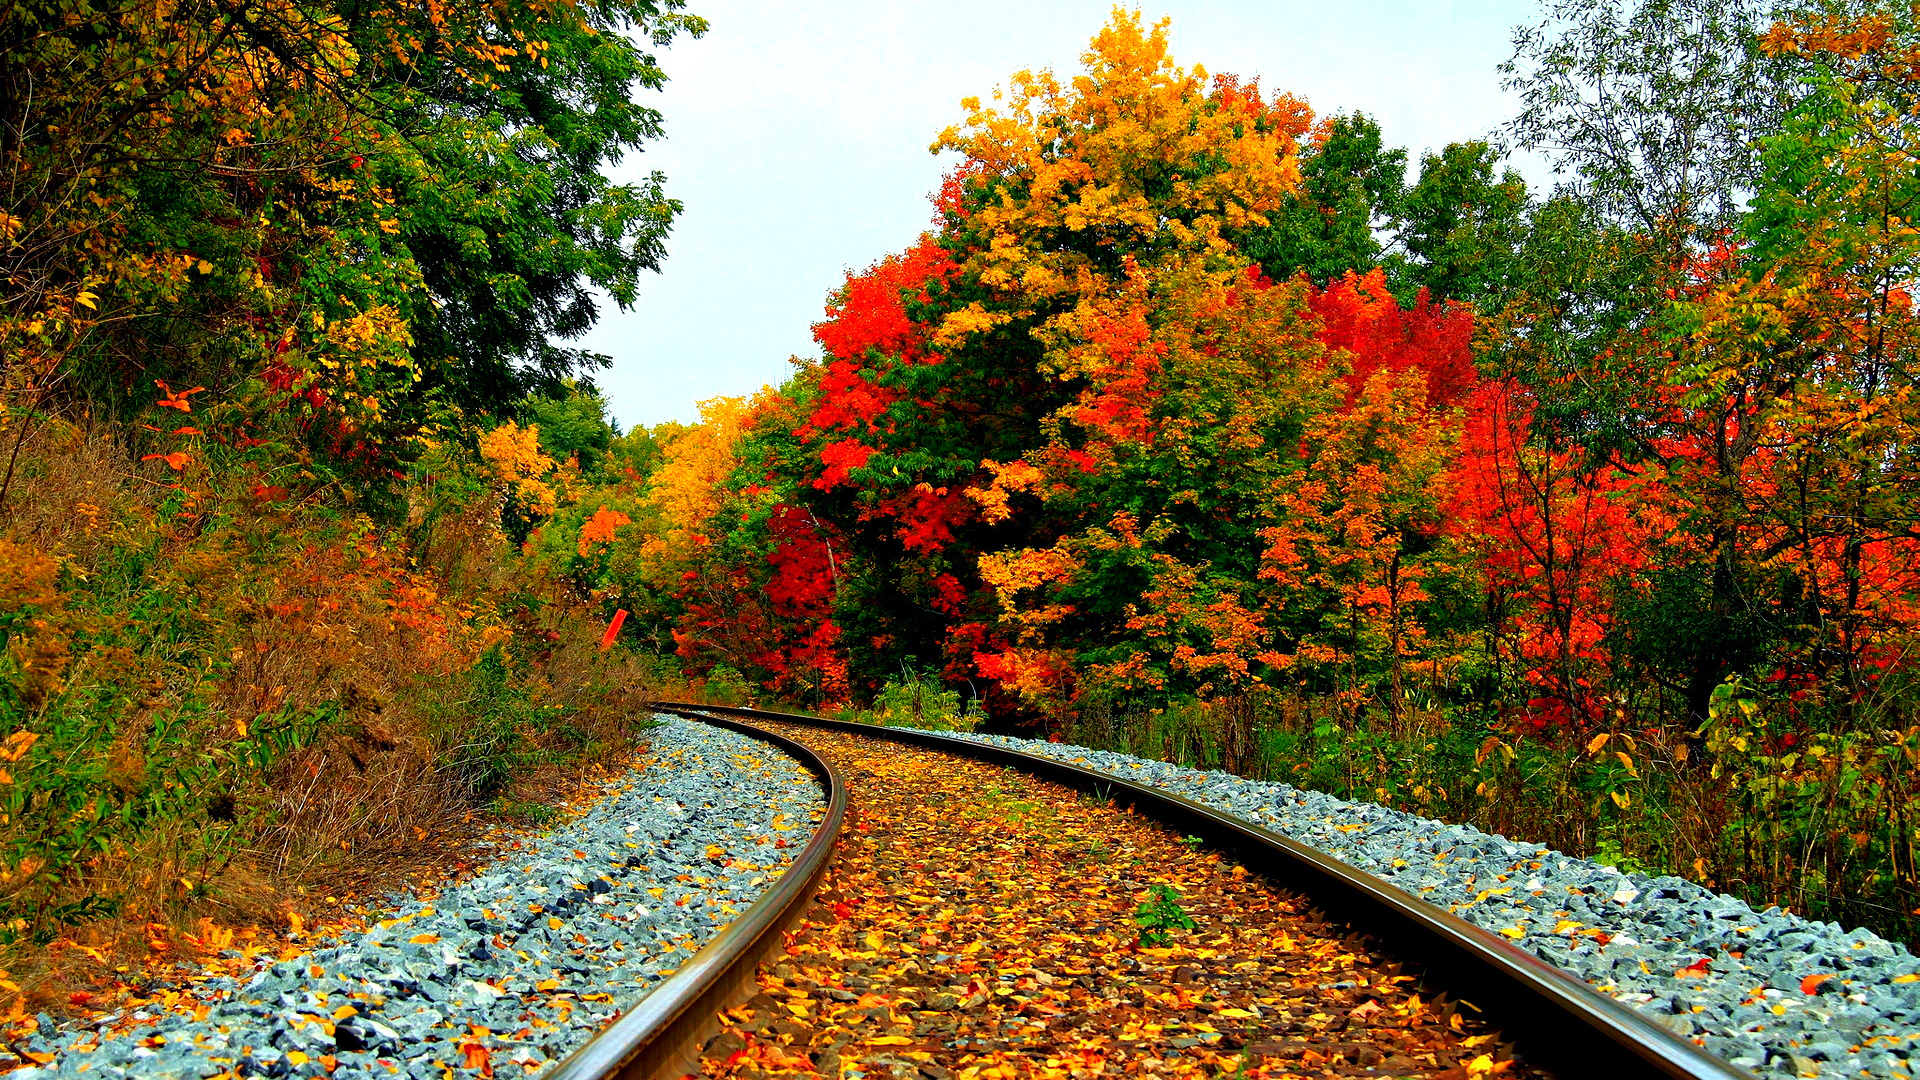 Railway in autumn forest